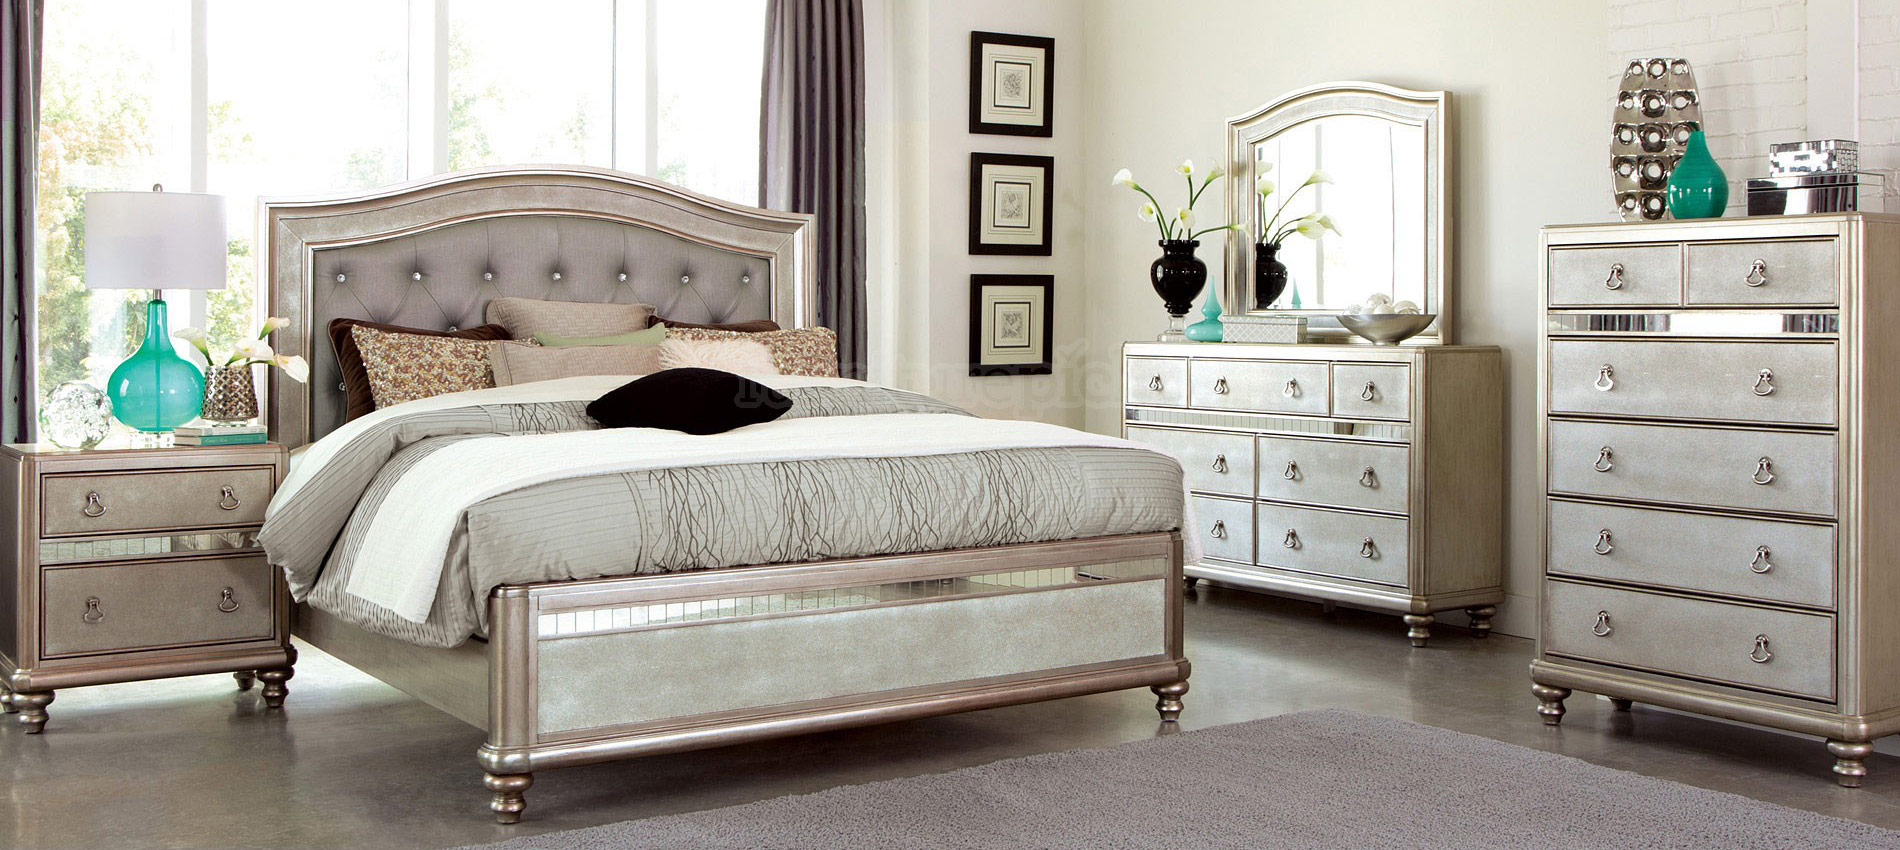 bedroom furniture liquidation sale